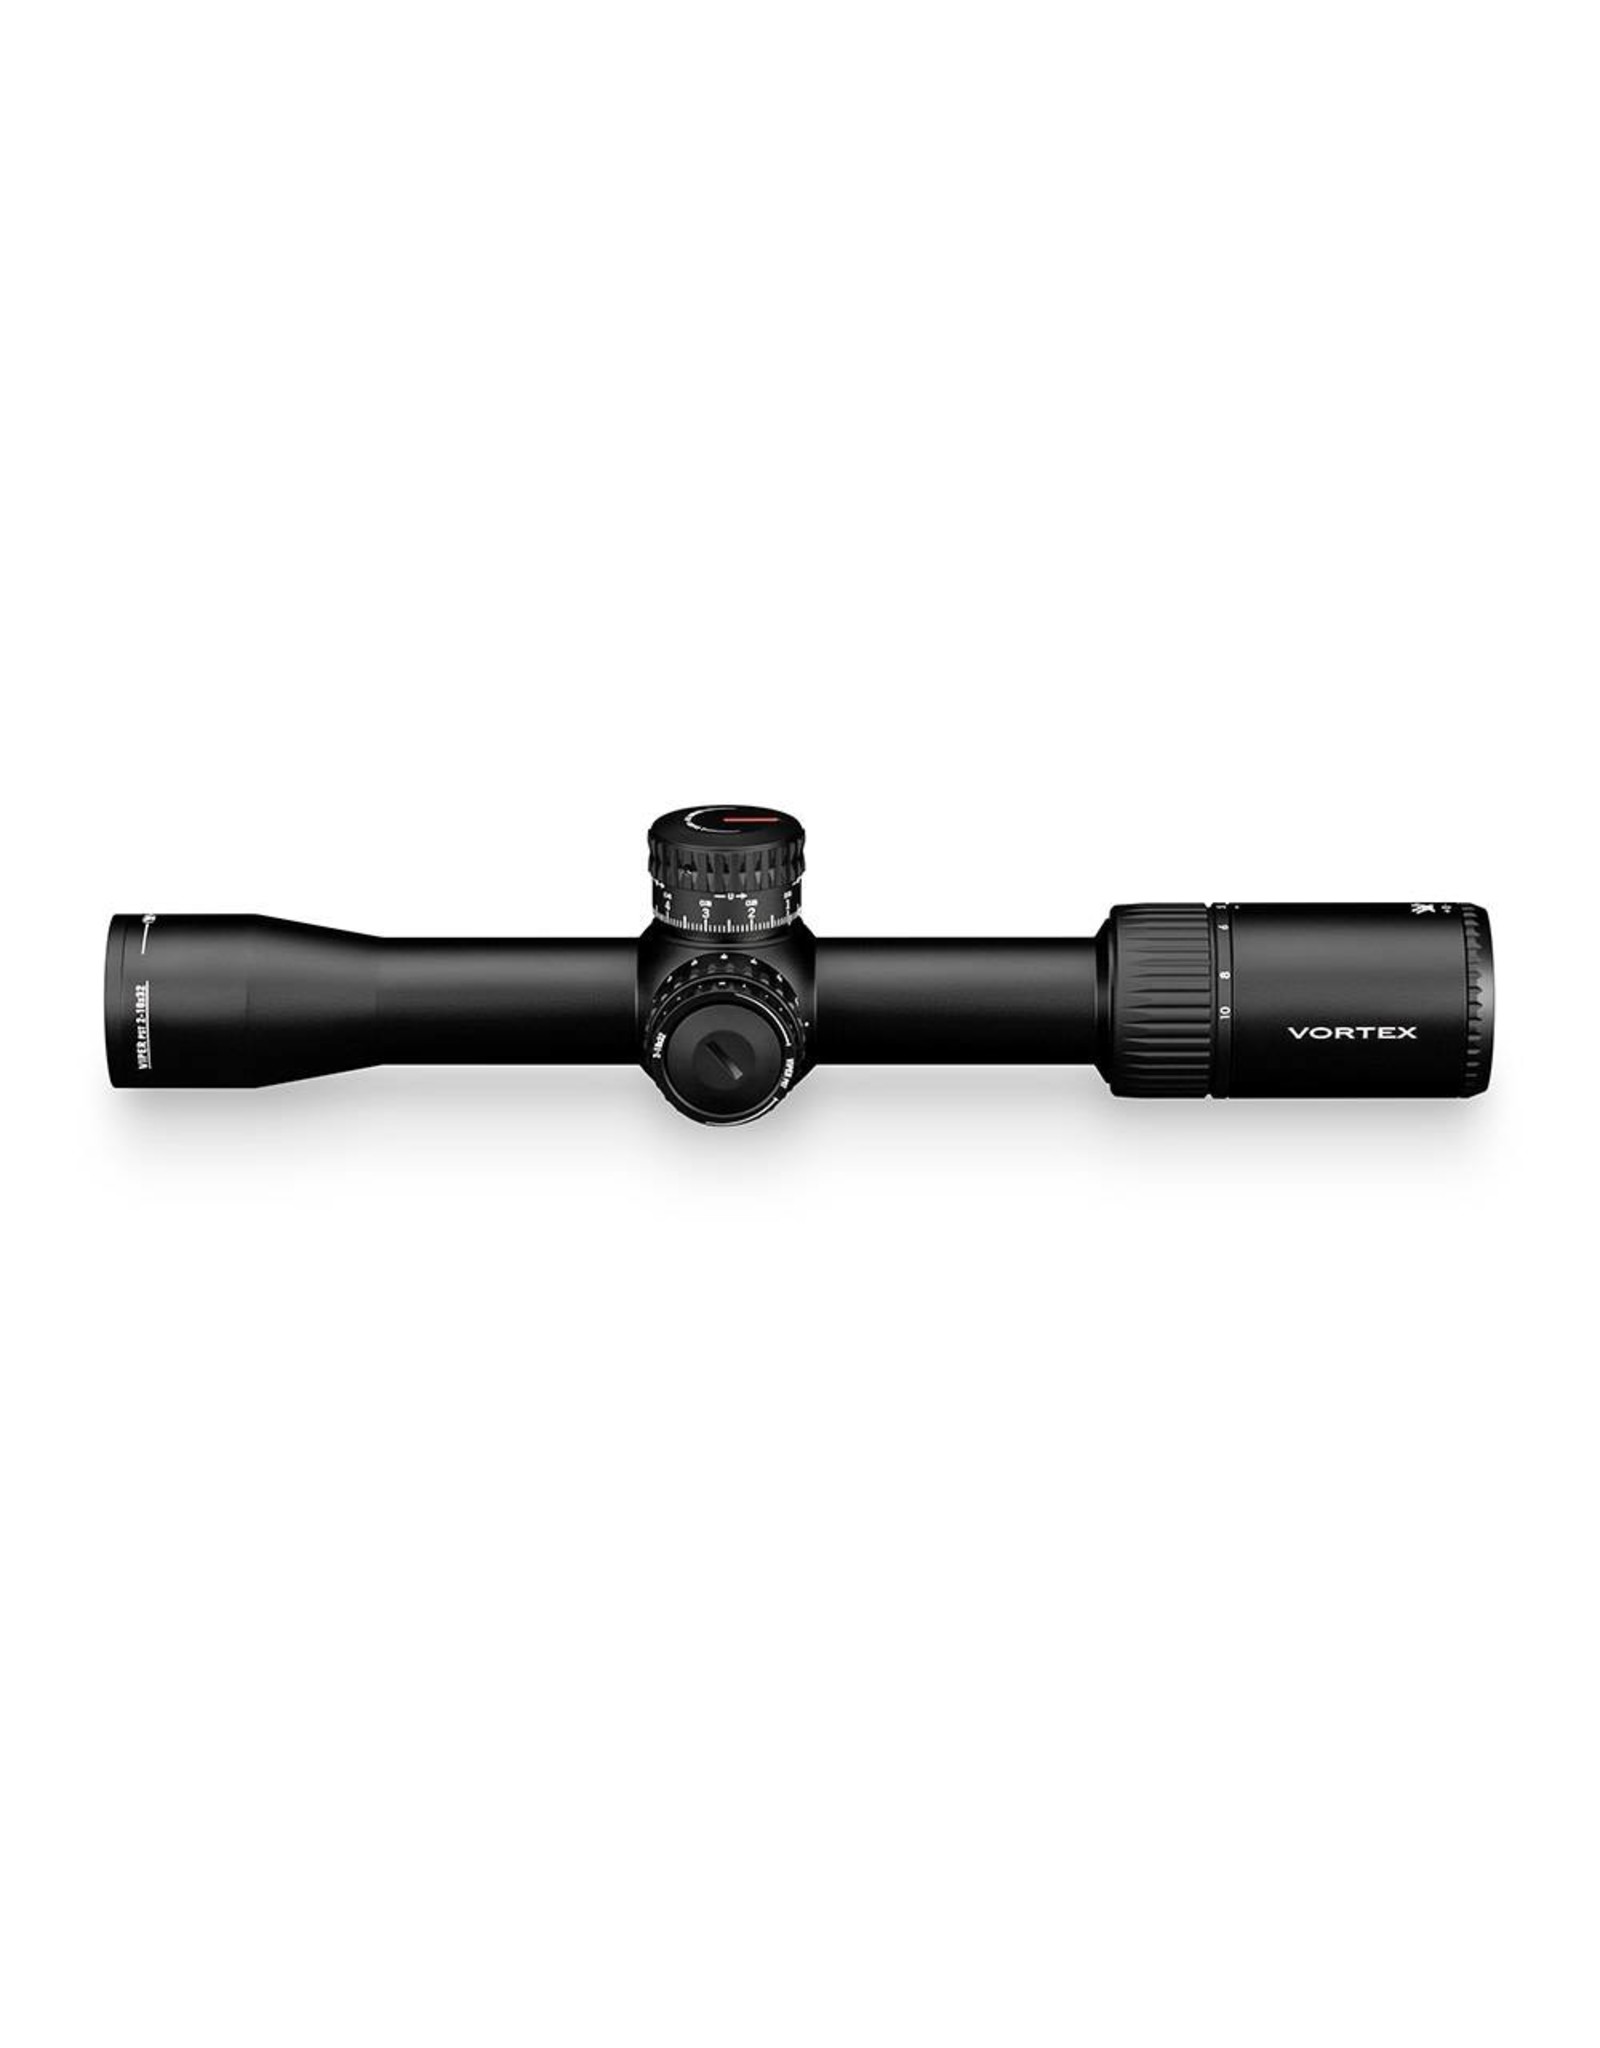 Vortex Vortex Viper PST 2-10x32 FFP Riflescope with EBR-4 MRAD